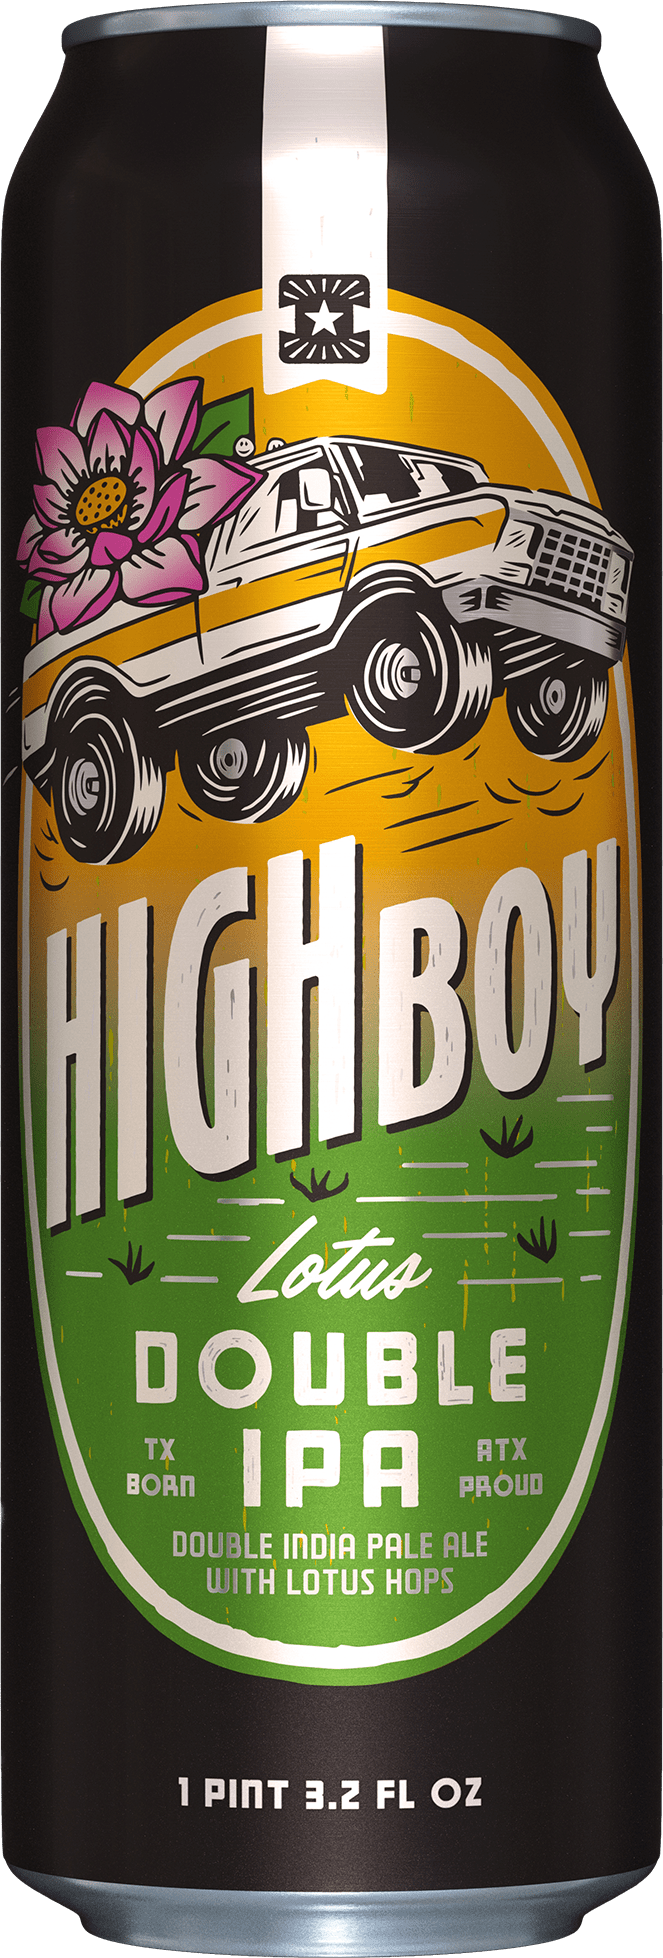 Highboy: Lotus